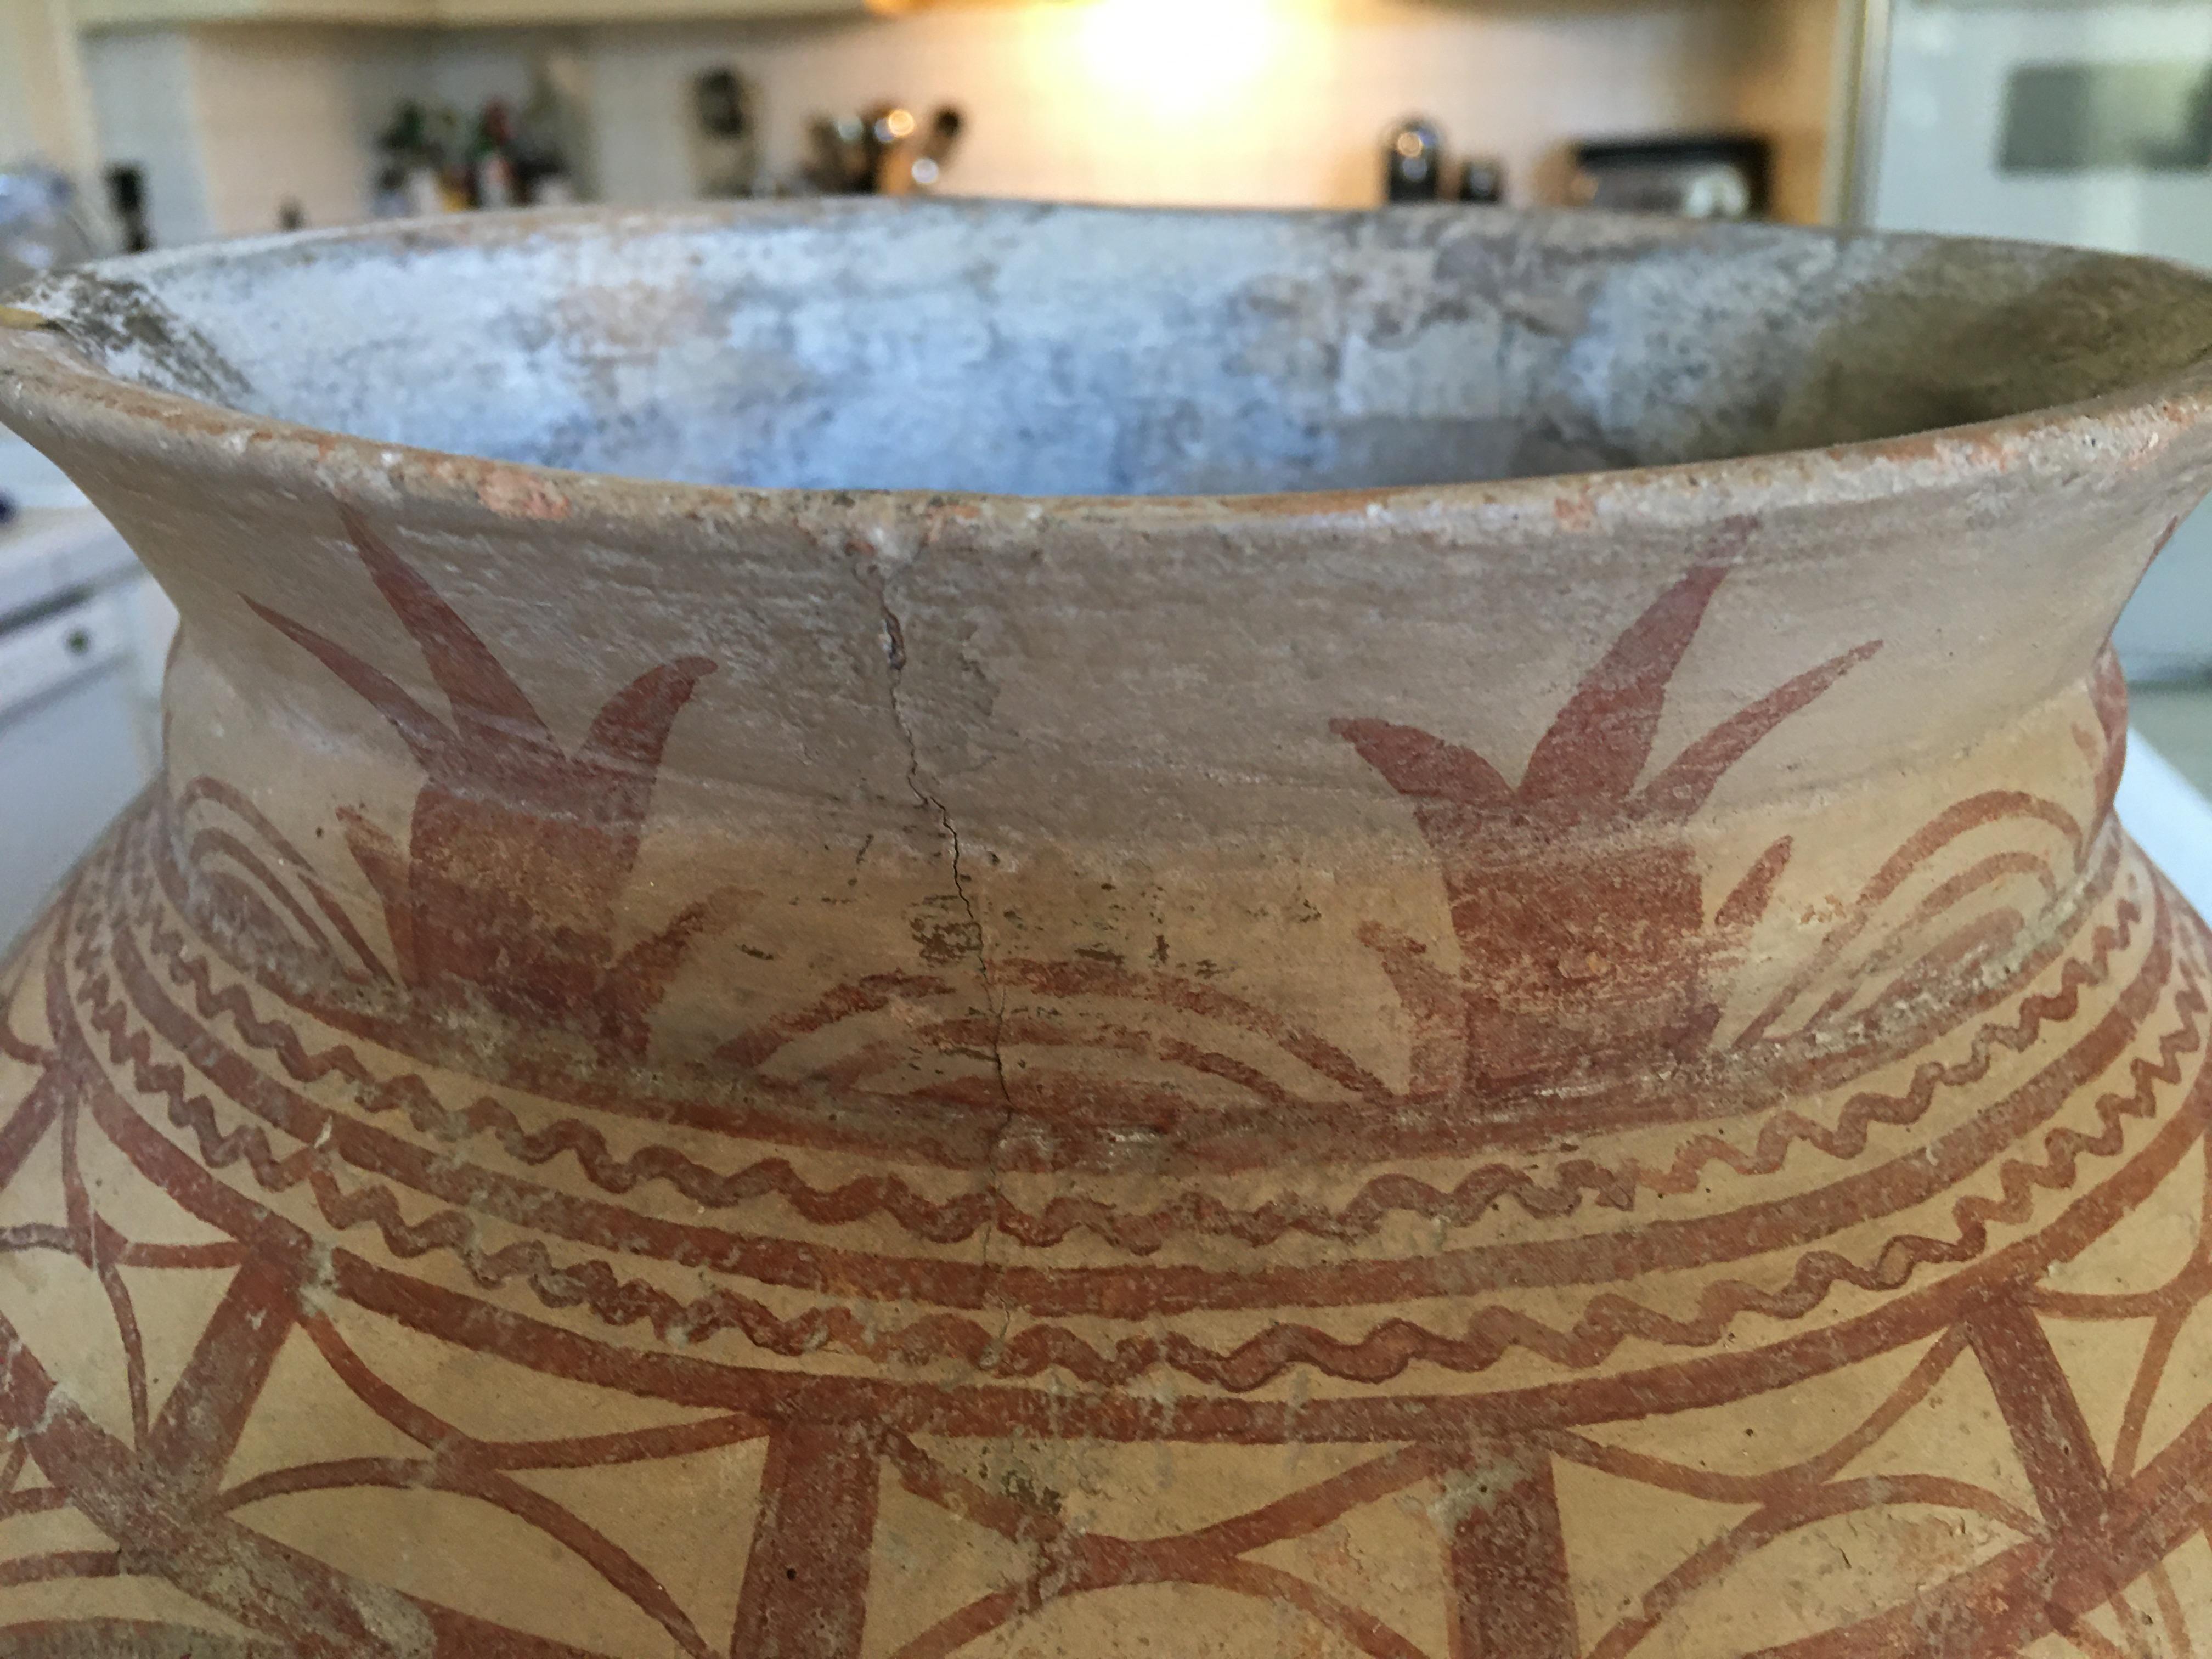 Thai Ancient Ban Chiang Painted Pottery Vessel, circa 300 BC 4